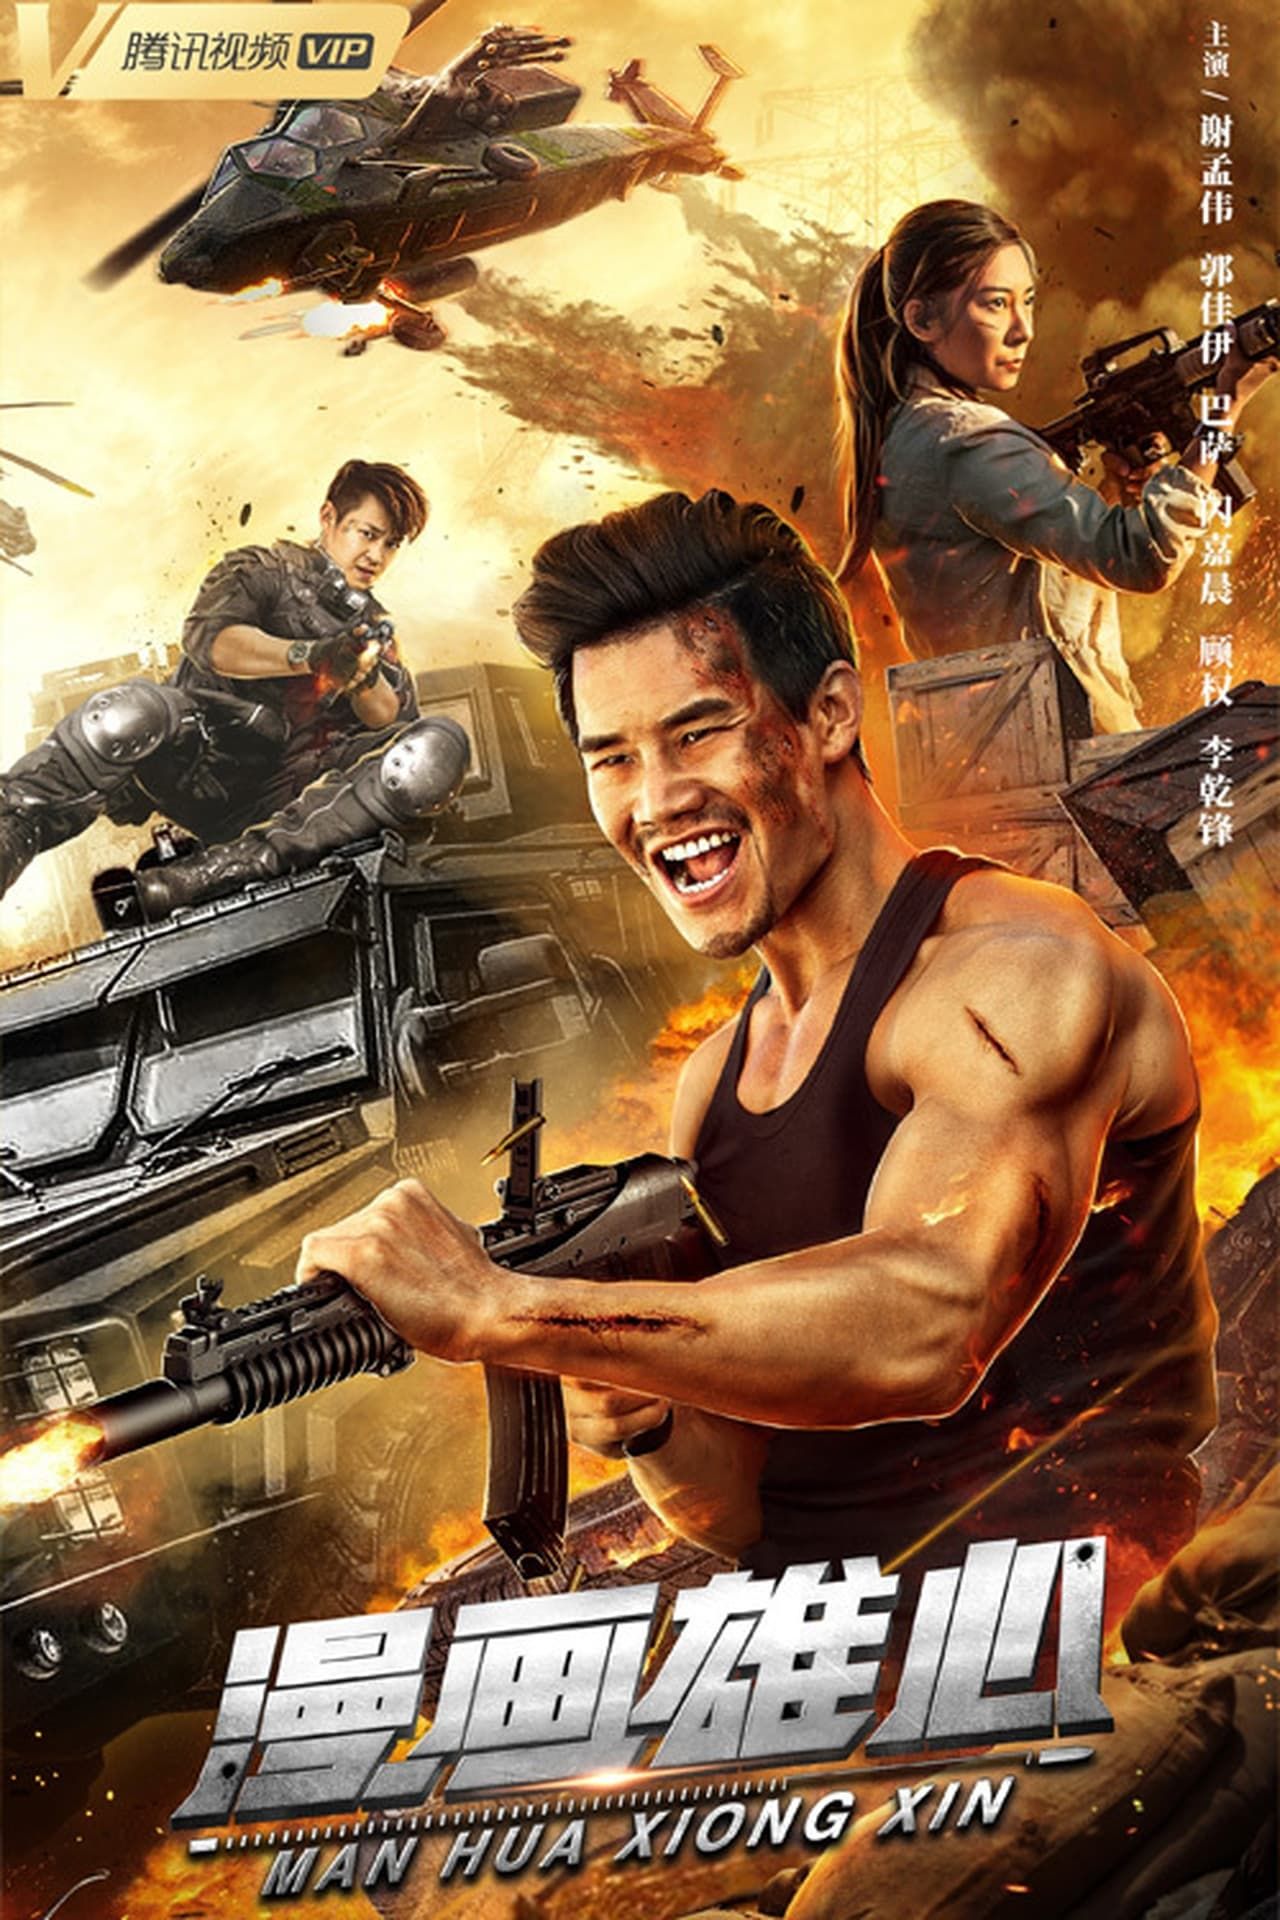 Man Hua Xiong Xin (2021) Hindi Dubbed Movie download full movie